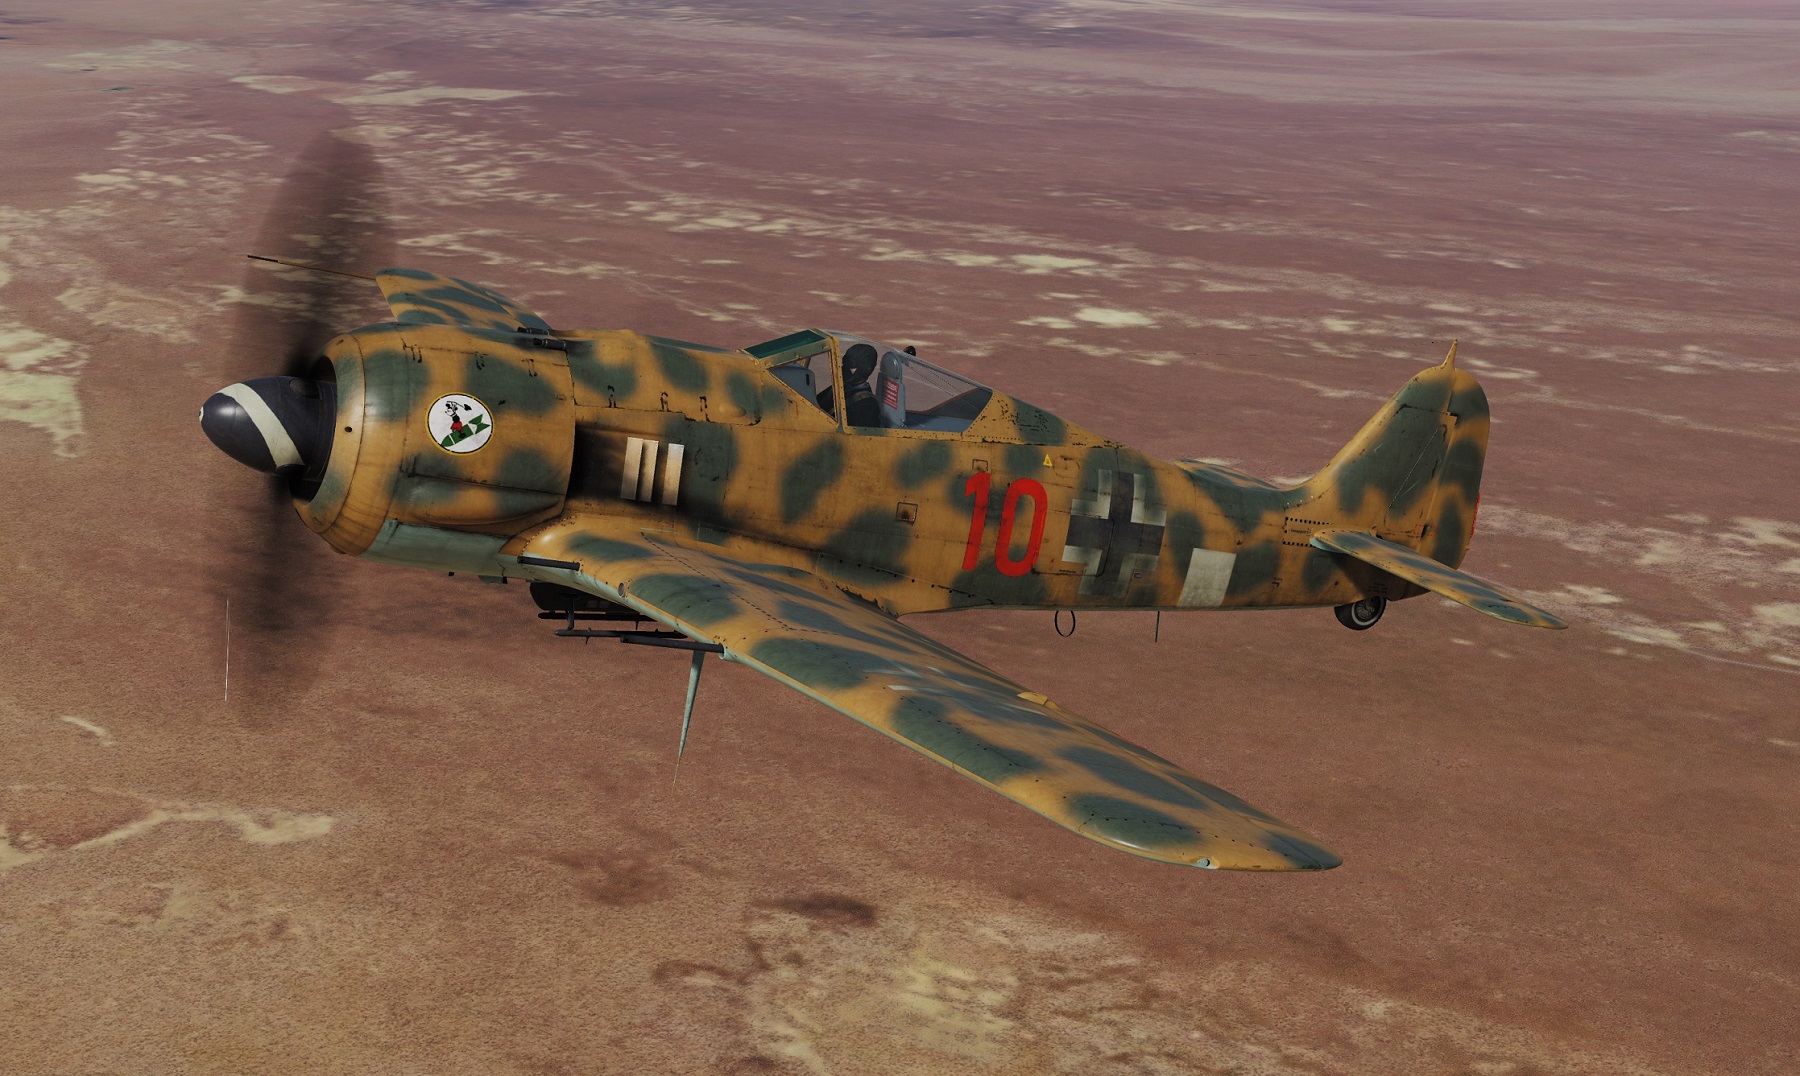 FW190 A-8 2./SG4 Anzio 1944